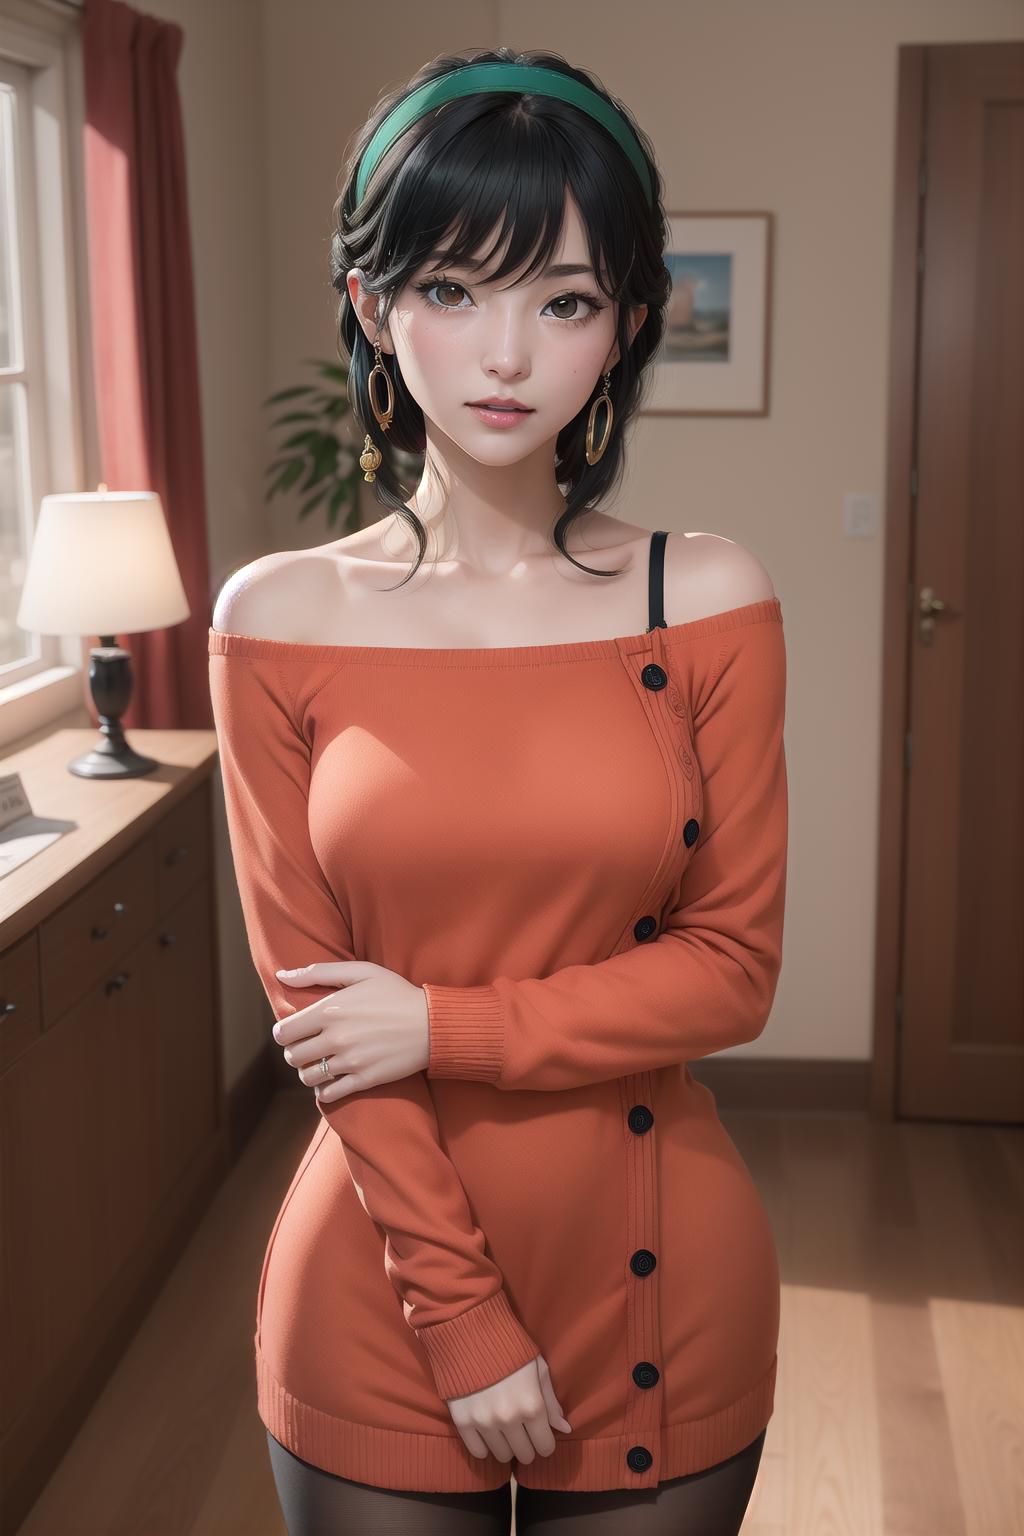 AI model image by WanDou7